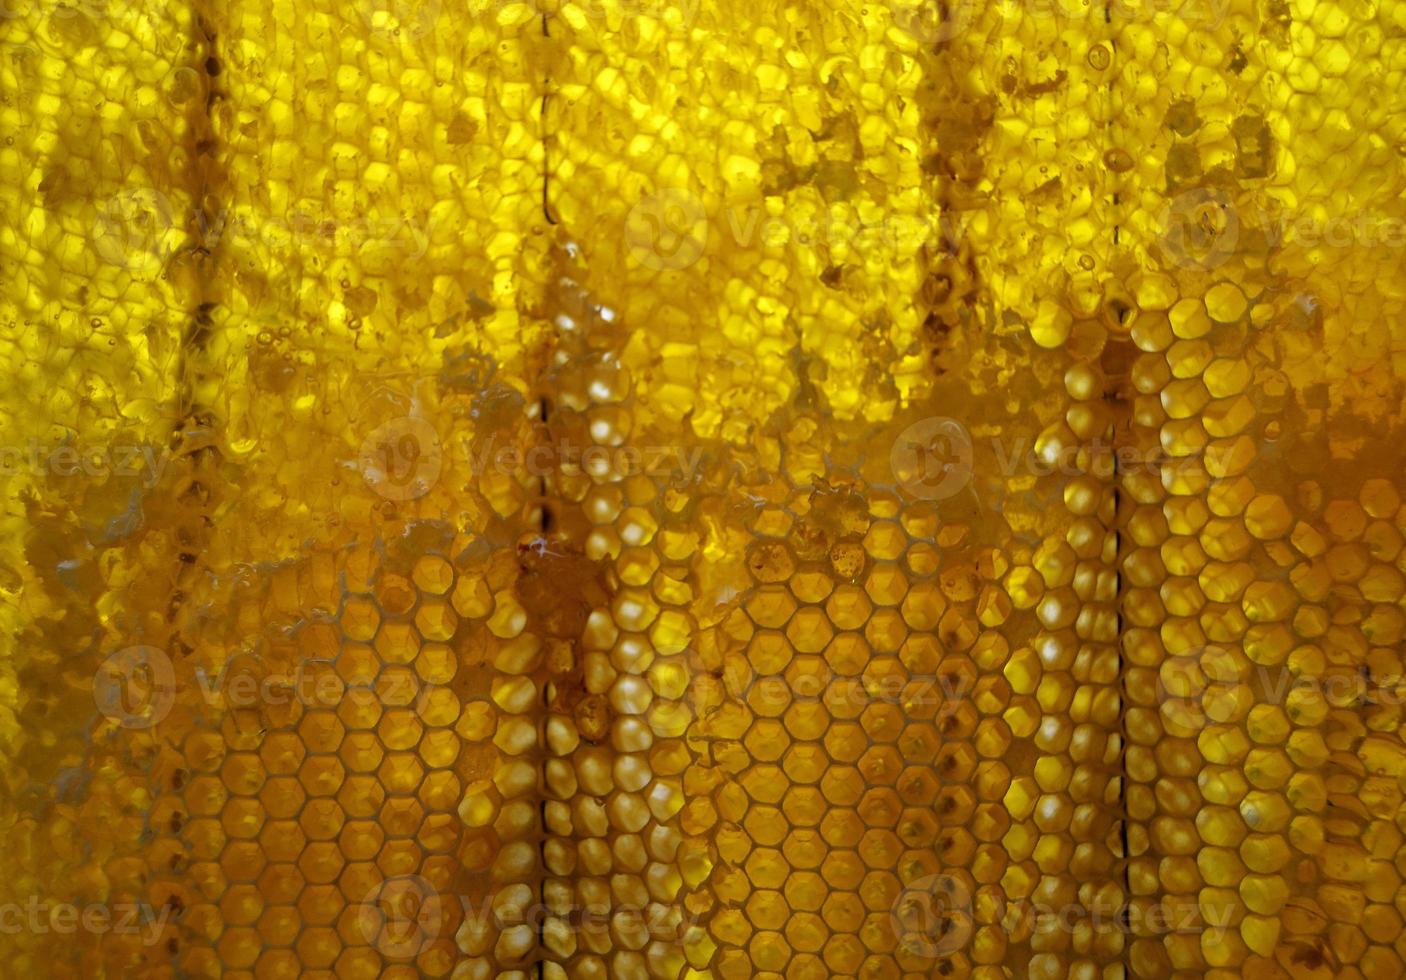 goutte de miel d'abeille goutte de nids d'abeilles hexagonaux photo